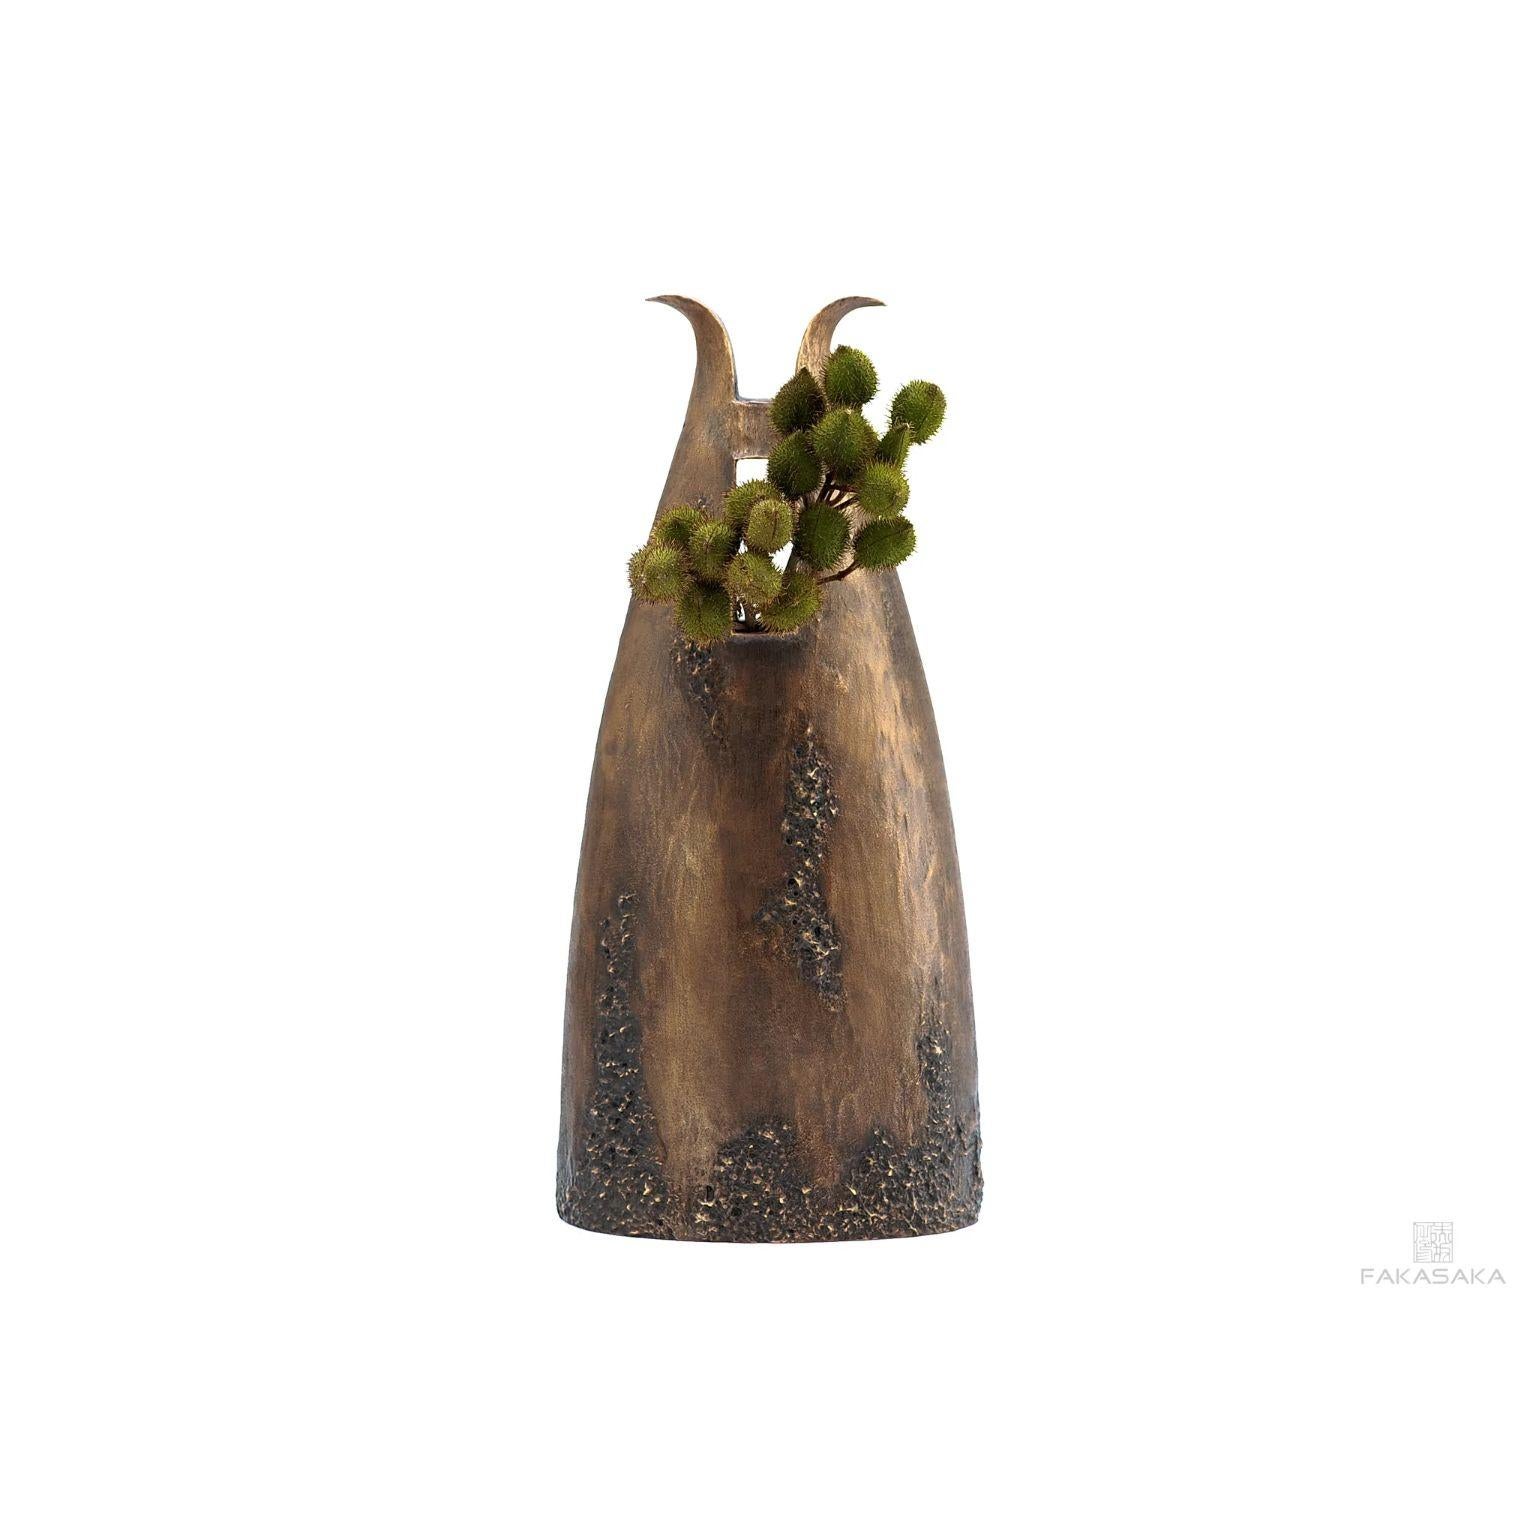 Other Garrym Vase by Fakasaka Design For Sale